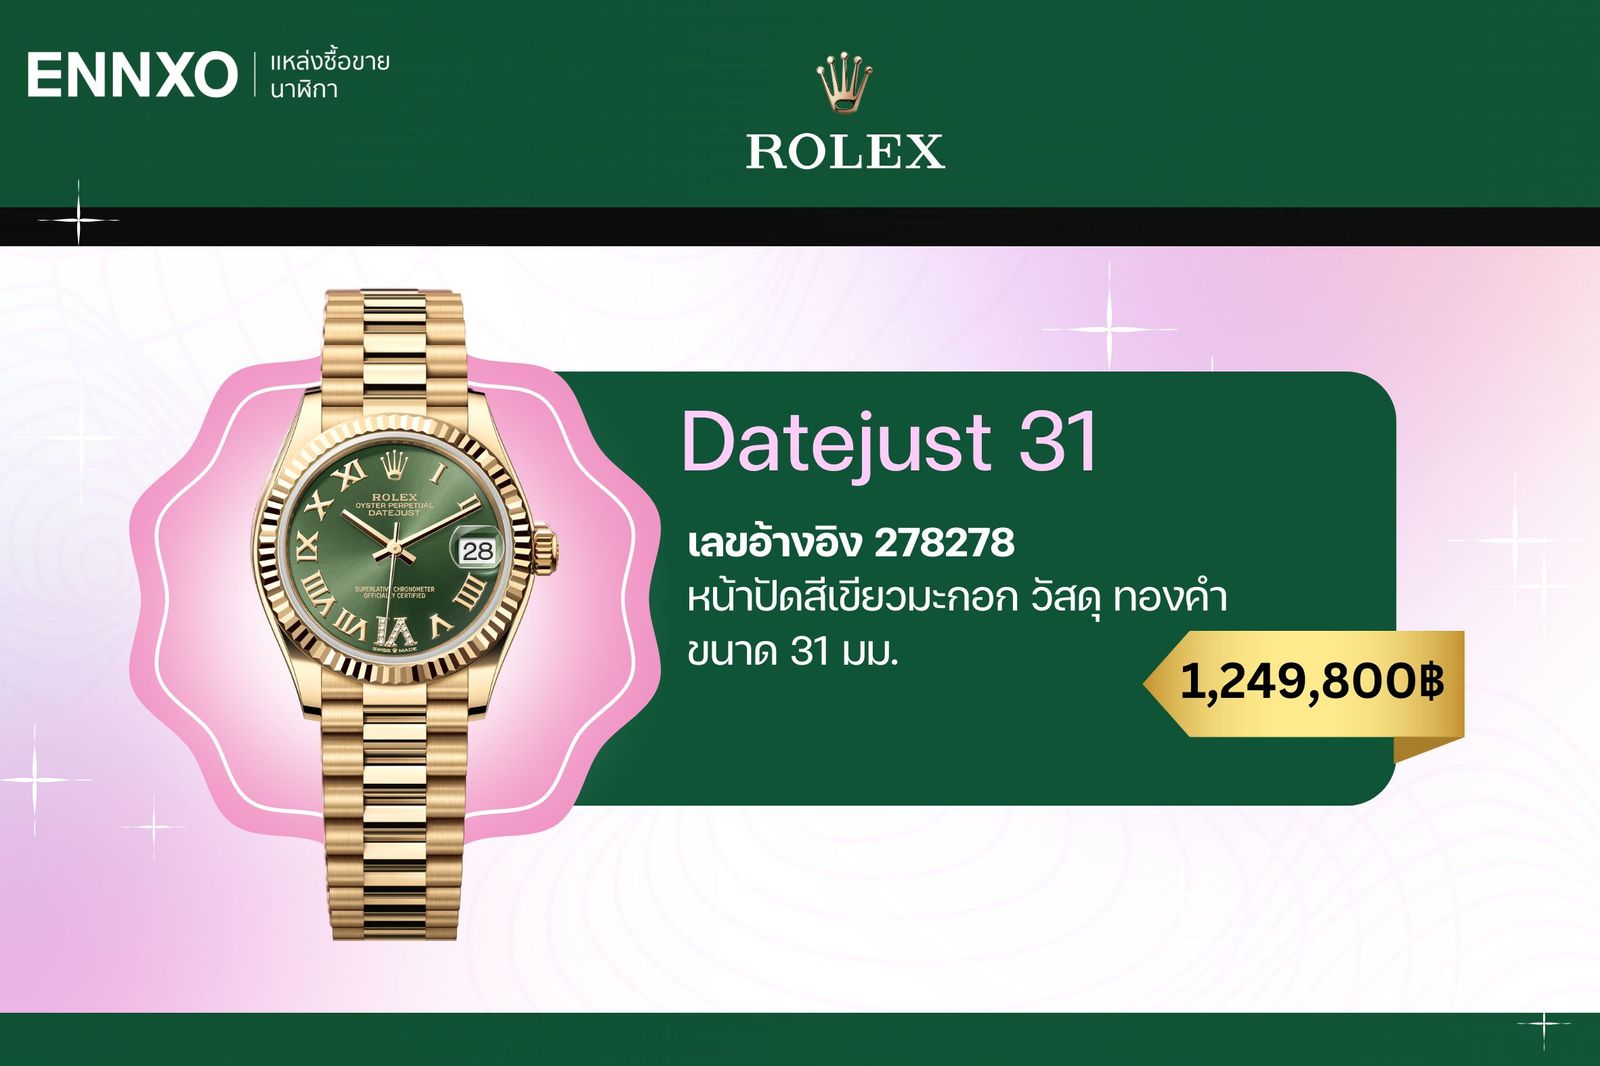  นาฬิกาโรเล็กซ์ผู้หญิง Datejust 31 mm.